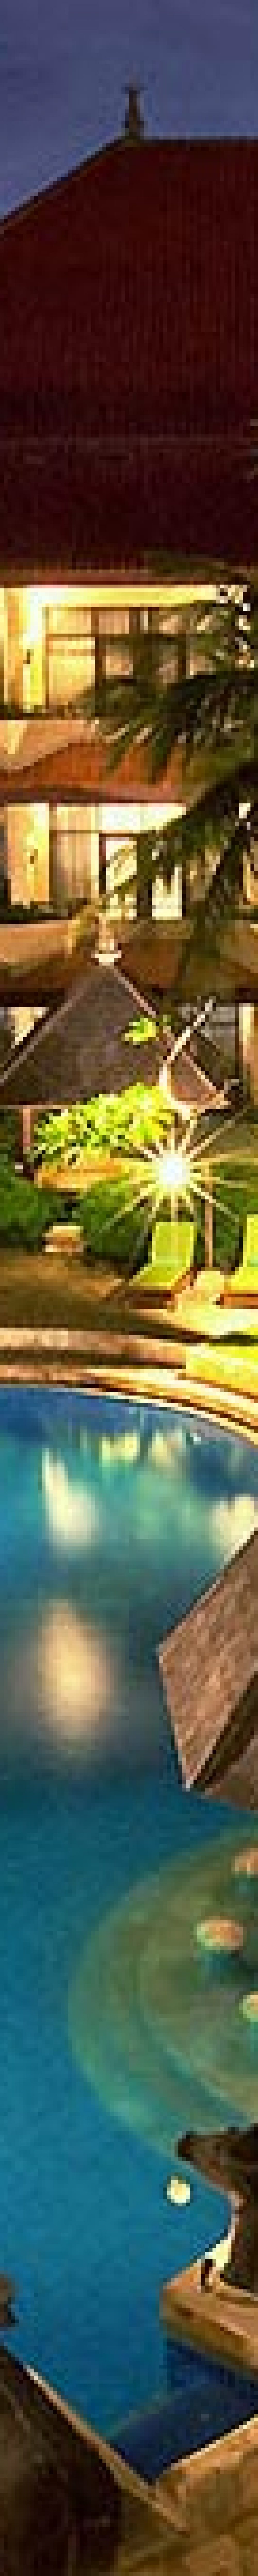 tanjung benoa bali tanjung benoa beach resort swimming pool tanjung benoa resort swimming pool